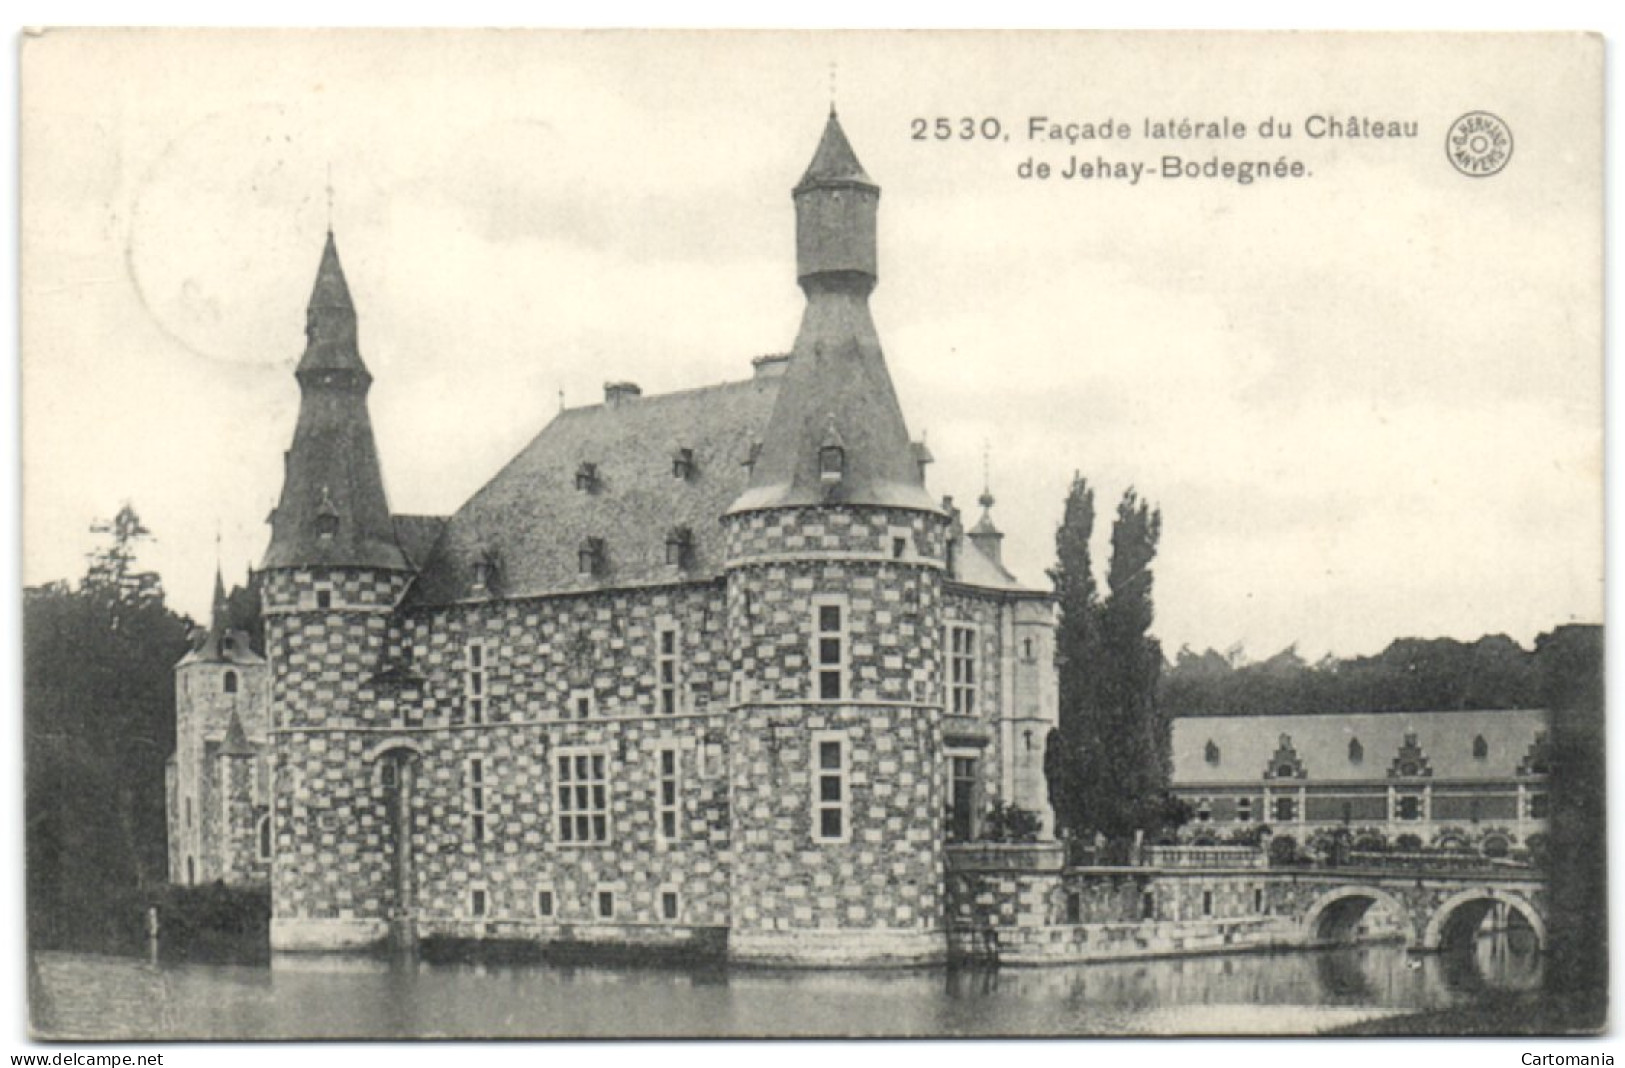 Façade Latérale Du Château De Jehay-Bodegnée (G. Hermans Anvers 2530) - Amay